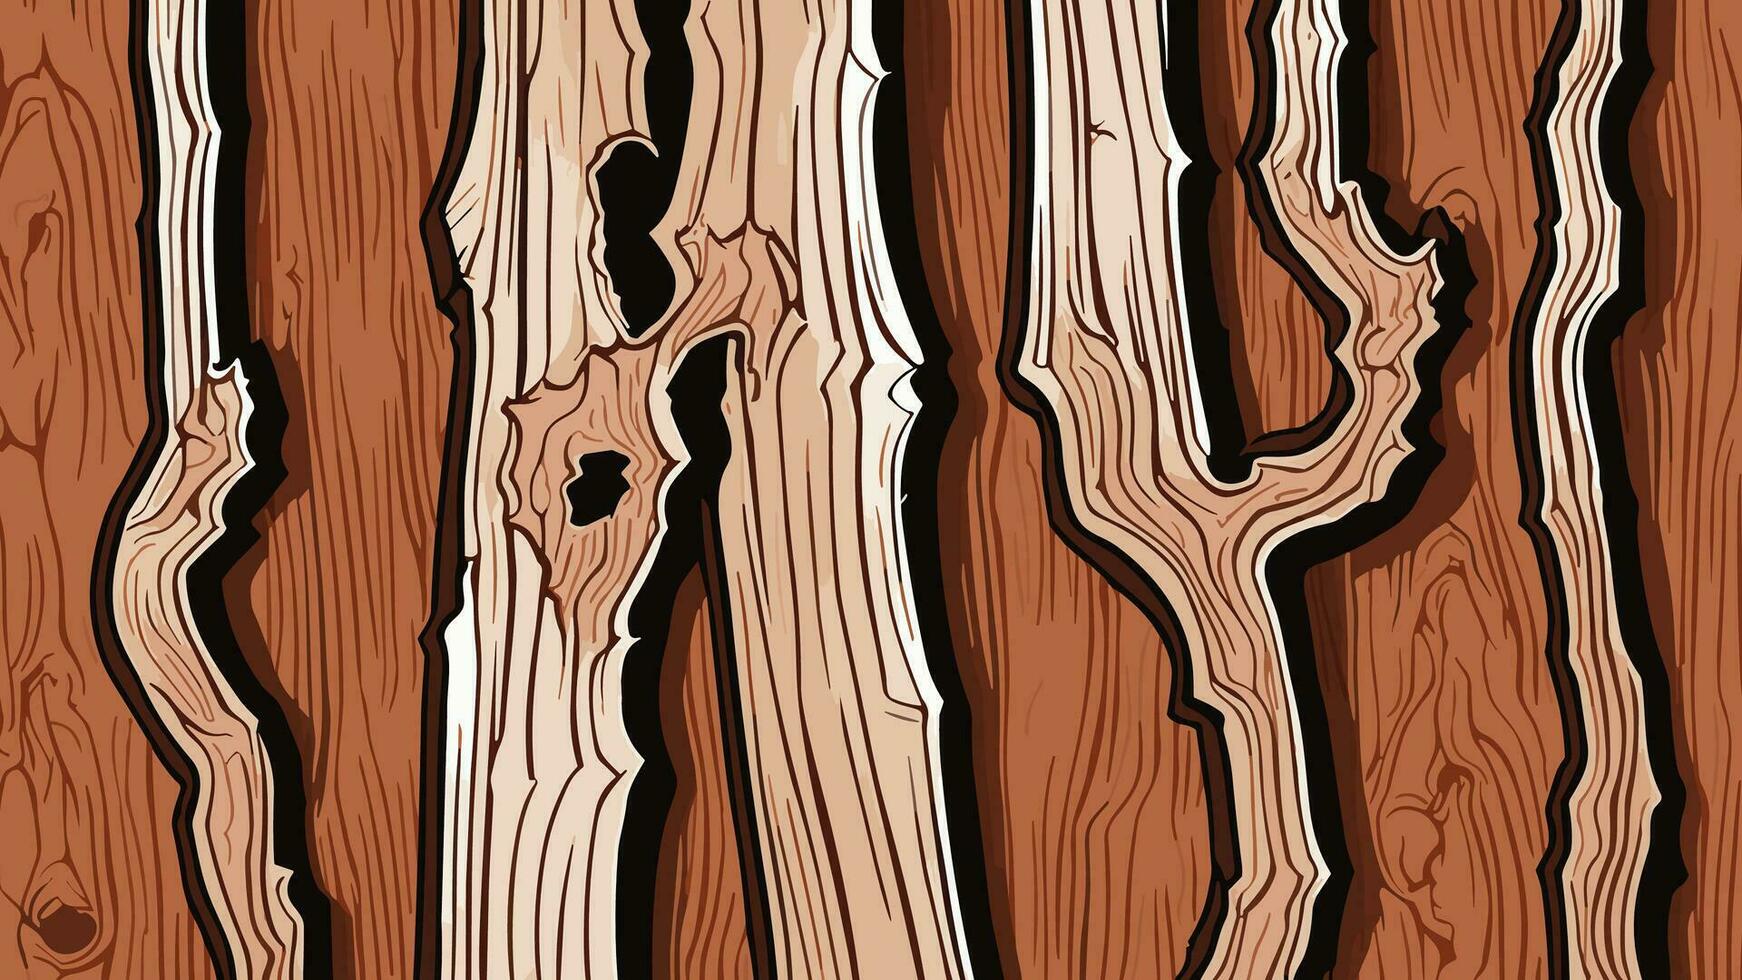 madera textura antecedentes con natural patrones y granos alto calidad imagen para diseño, imprimir, web, y Arte proyectos vector